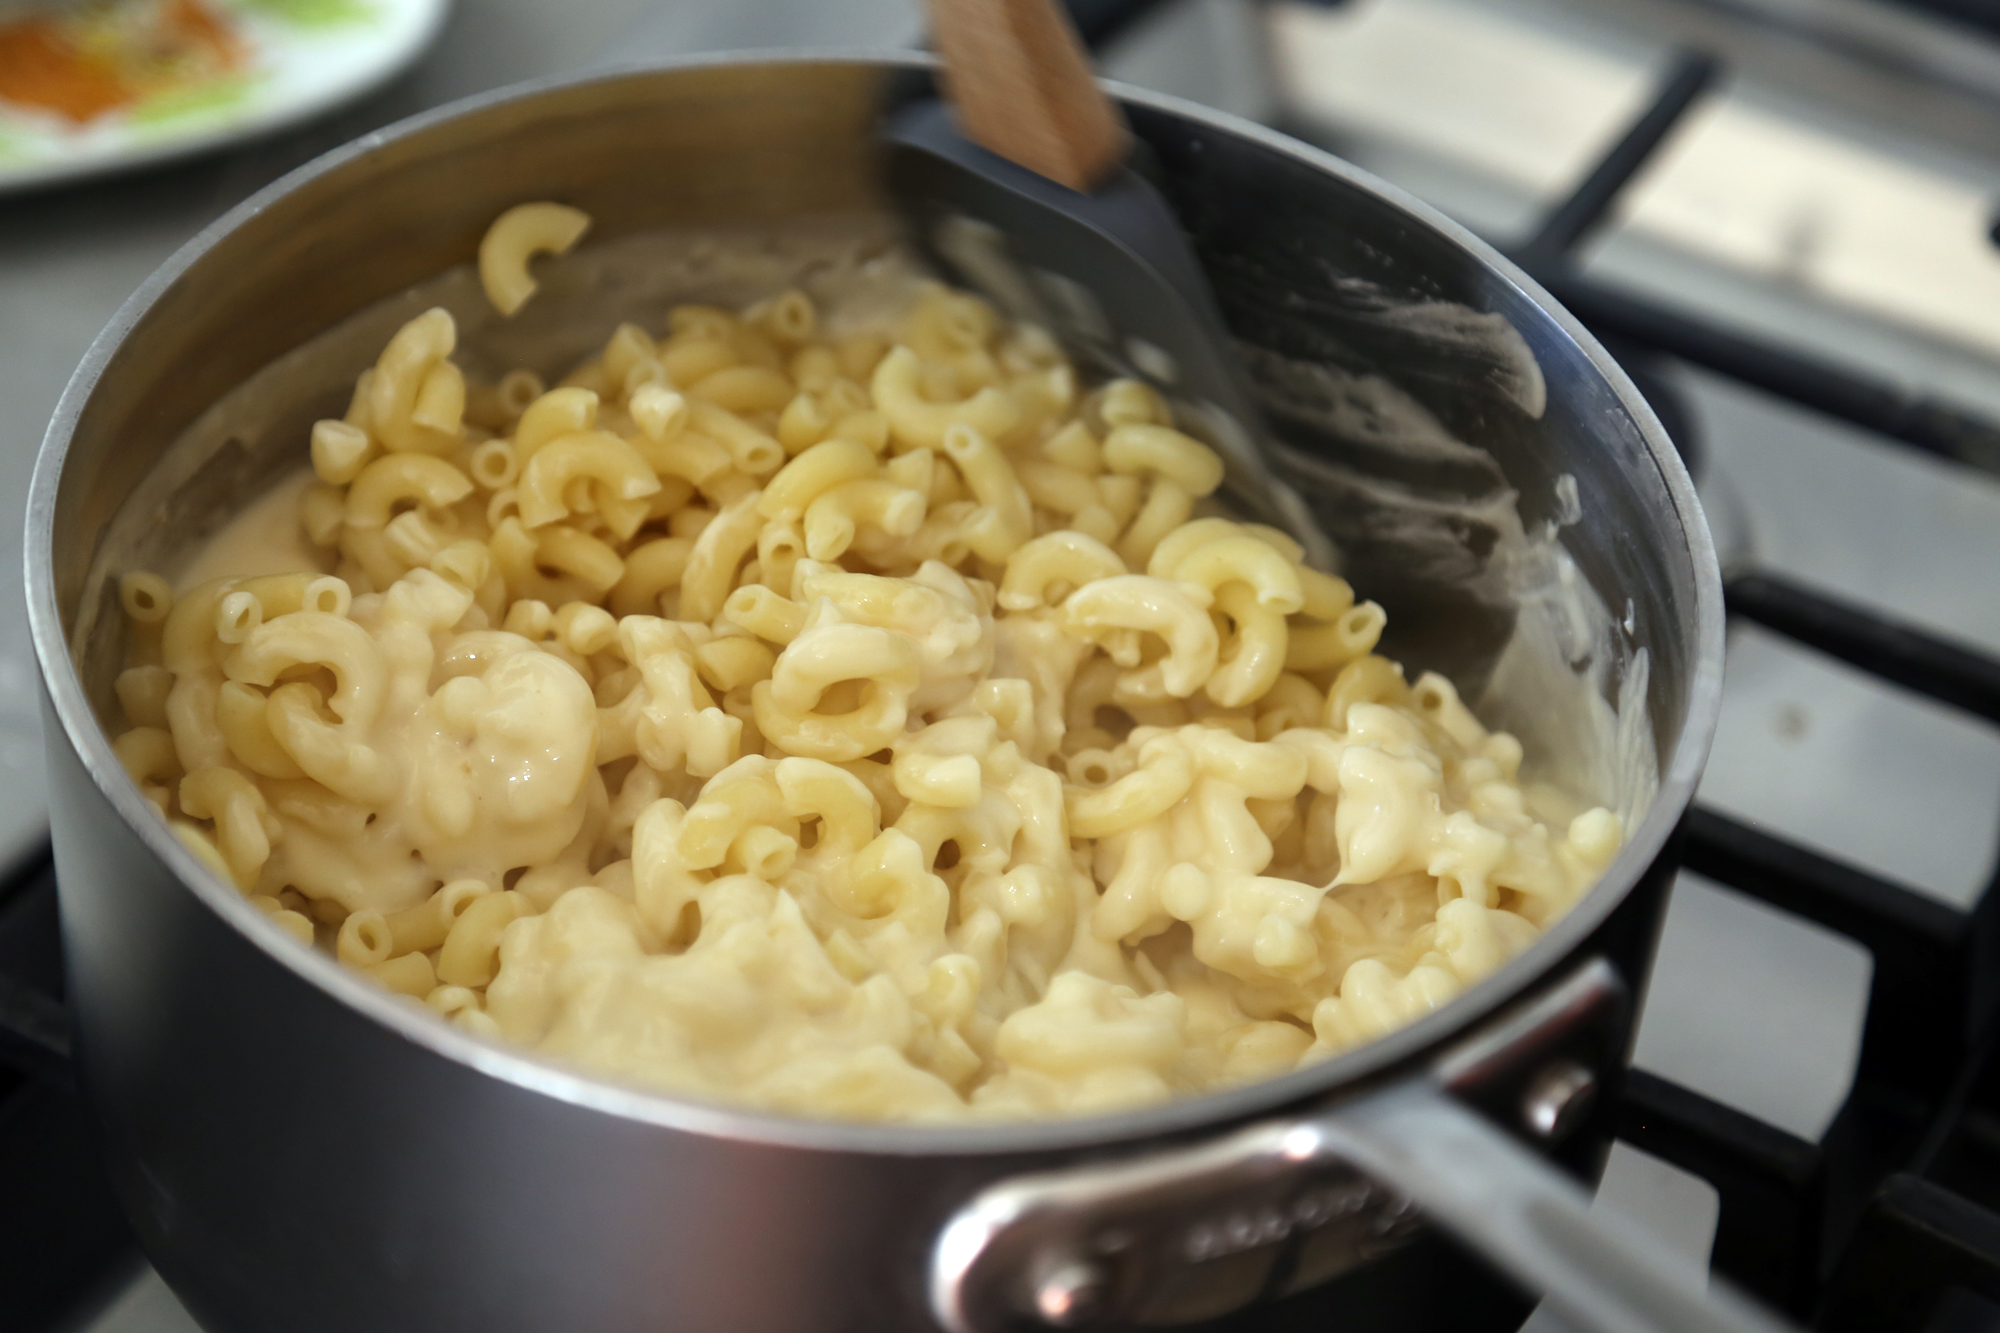 Stir in the macaroni.